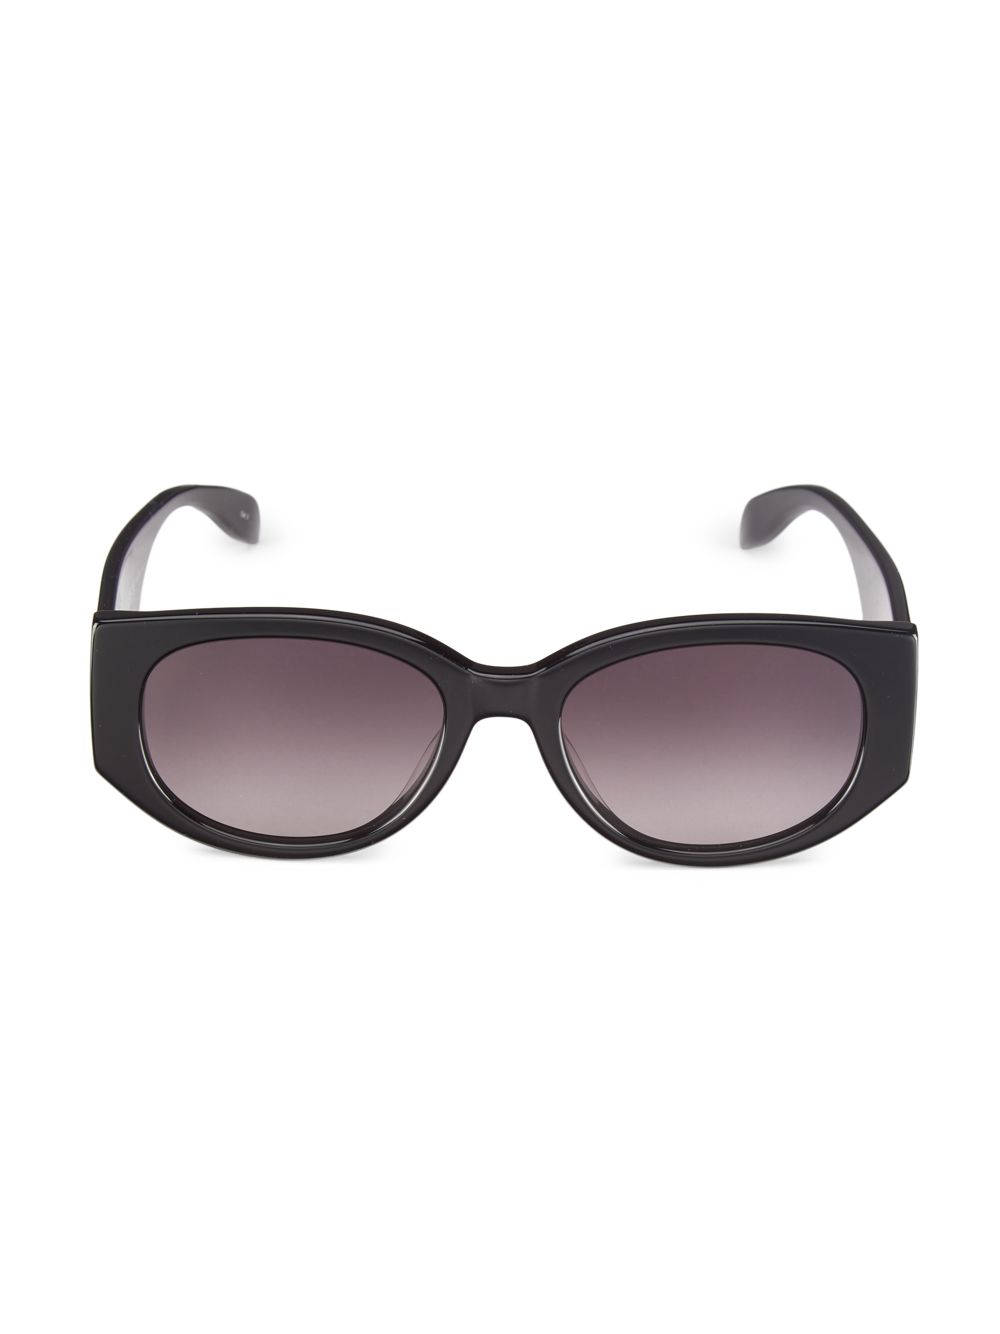 Овальные солнцезащитные очки Graffiti 54MM Alexander McQueen, черный солнцезащитные очки masao gabrielle 54mm casablanca черный